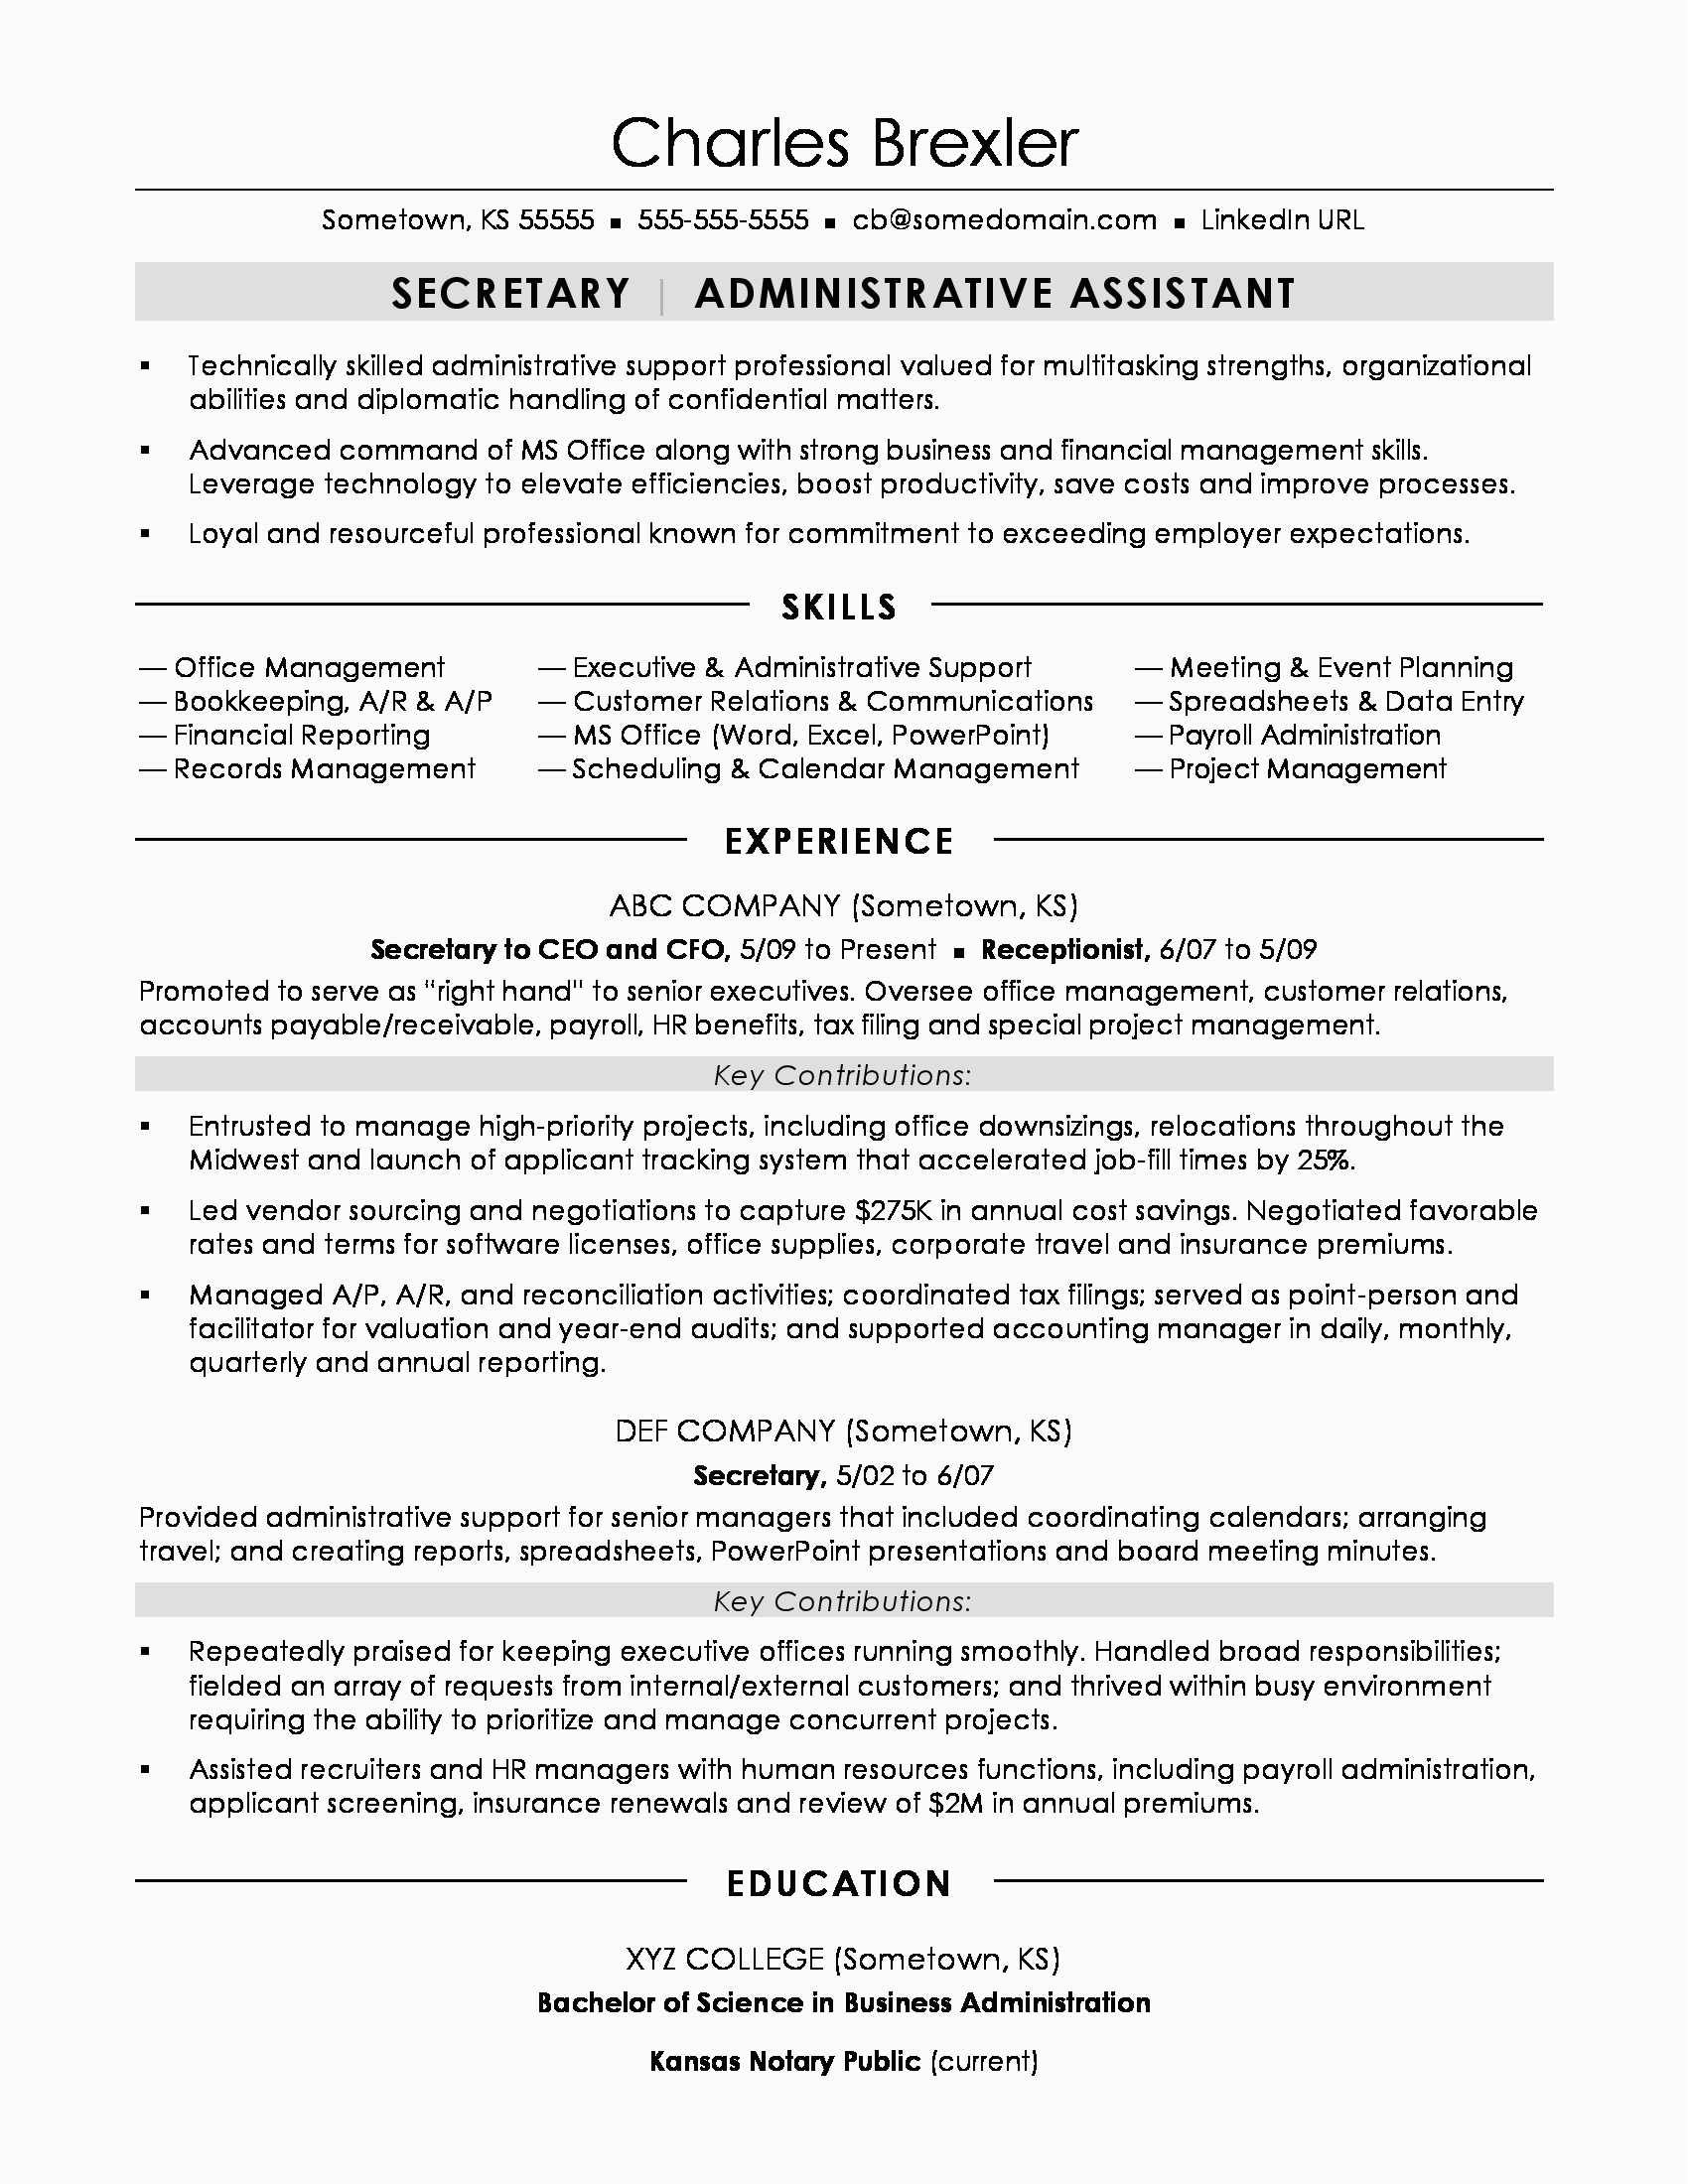 Sample Resume Objective for Secretary Position Secretary Resume Sample